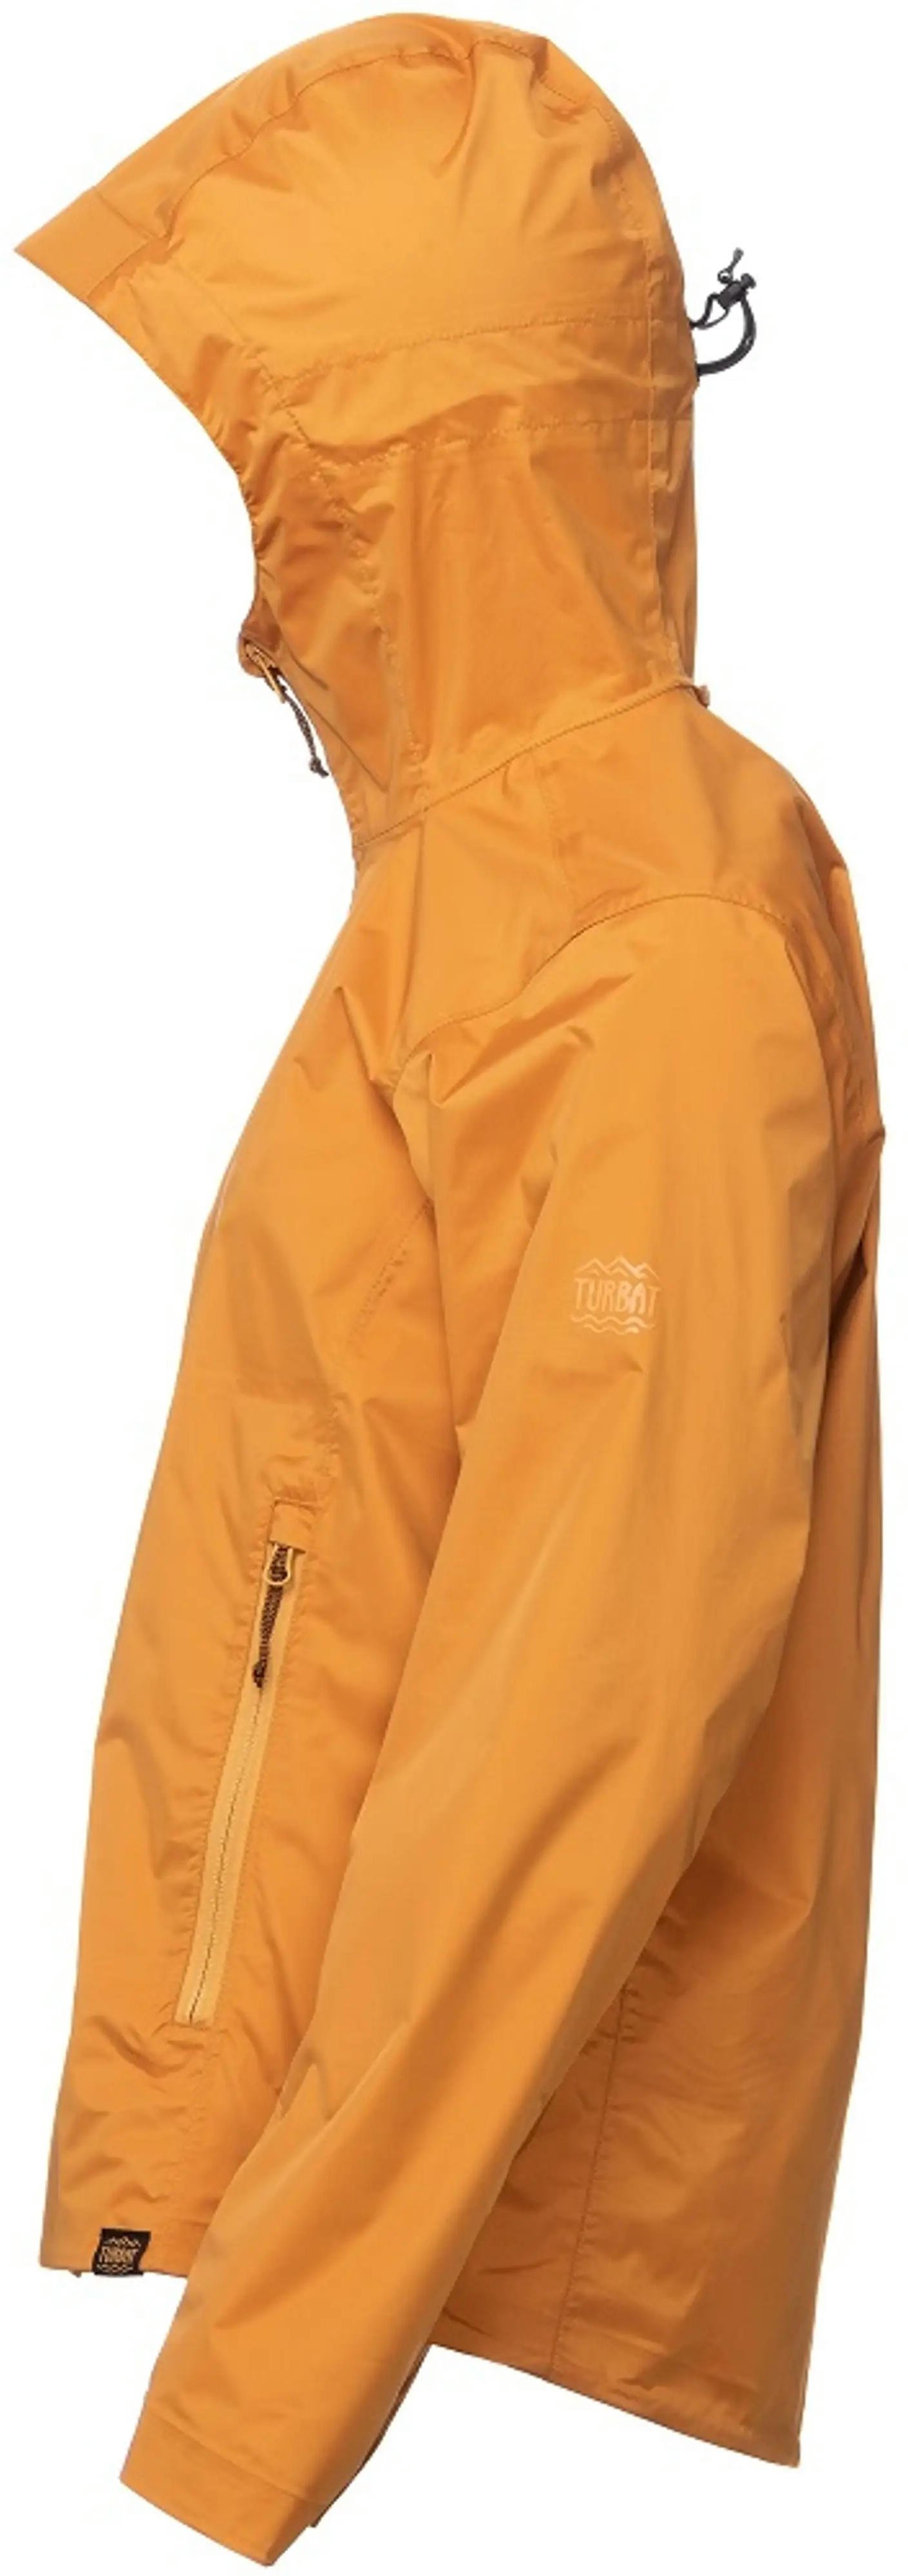 Куртка жіноча Turbat Isla Wmn golden oak orange L помаранчевийфото3